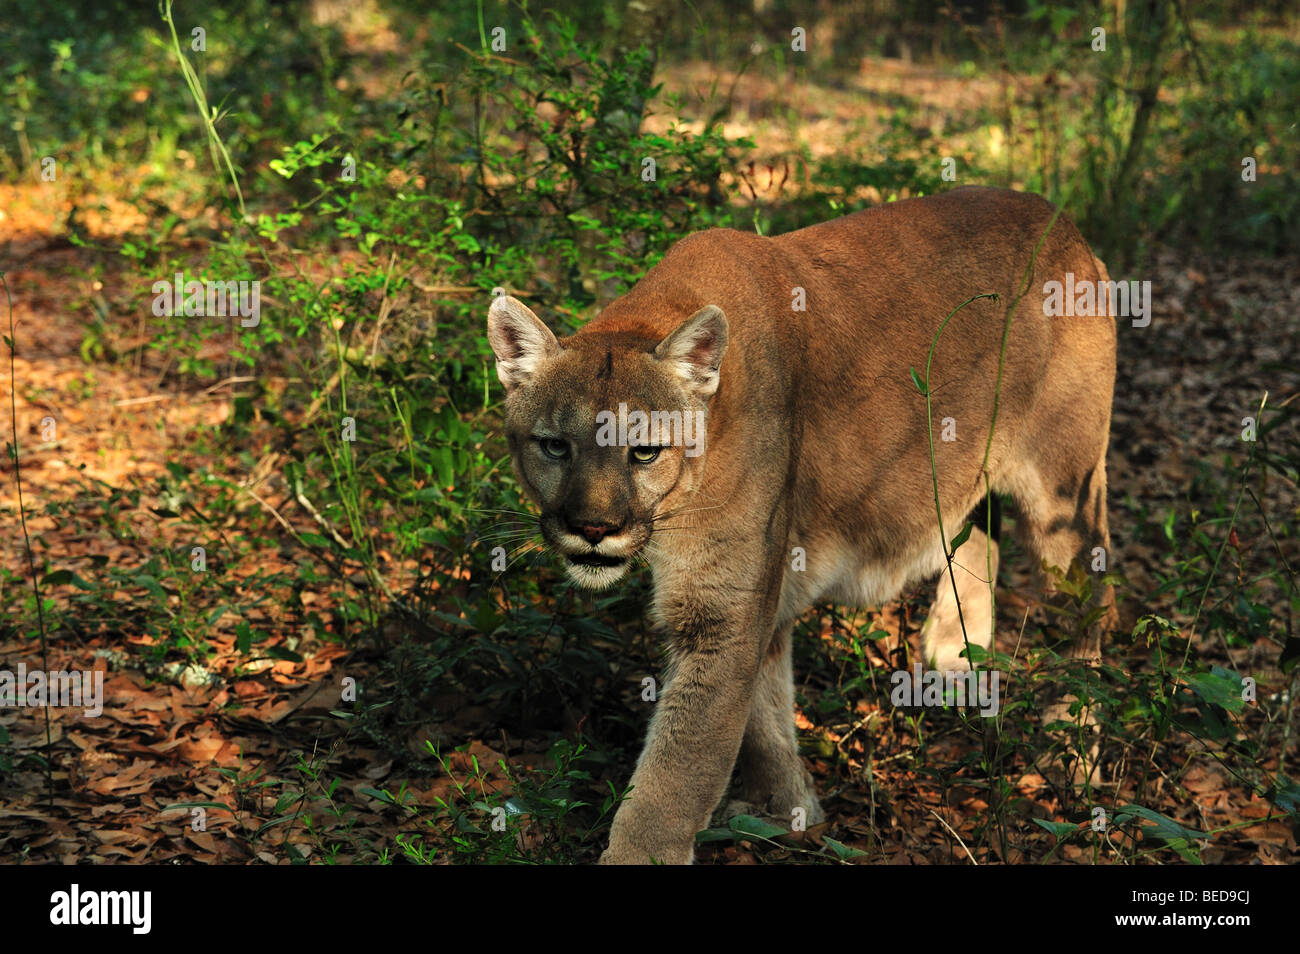 Florida Panther, Puma concolor coryi, Florida, captive Foto Stock